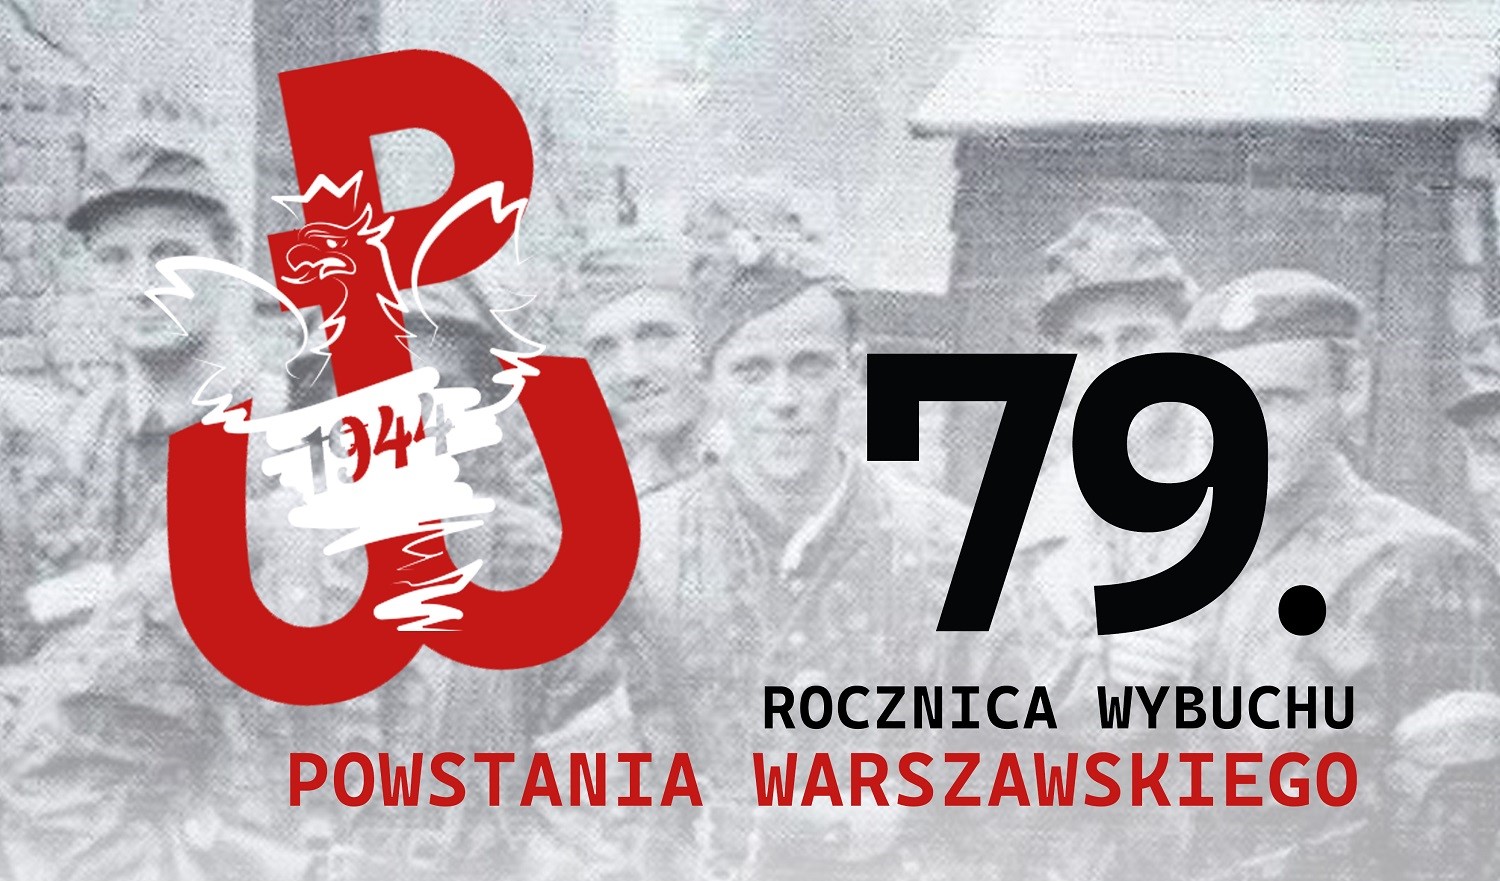 Piknik rodzinny i koncert "Mazowsza" z okazji rocznicy wybuchu Powstania Warszawskiego!